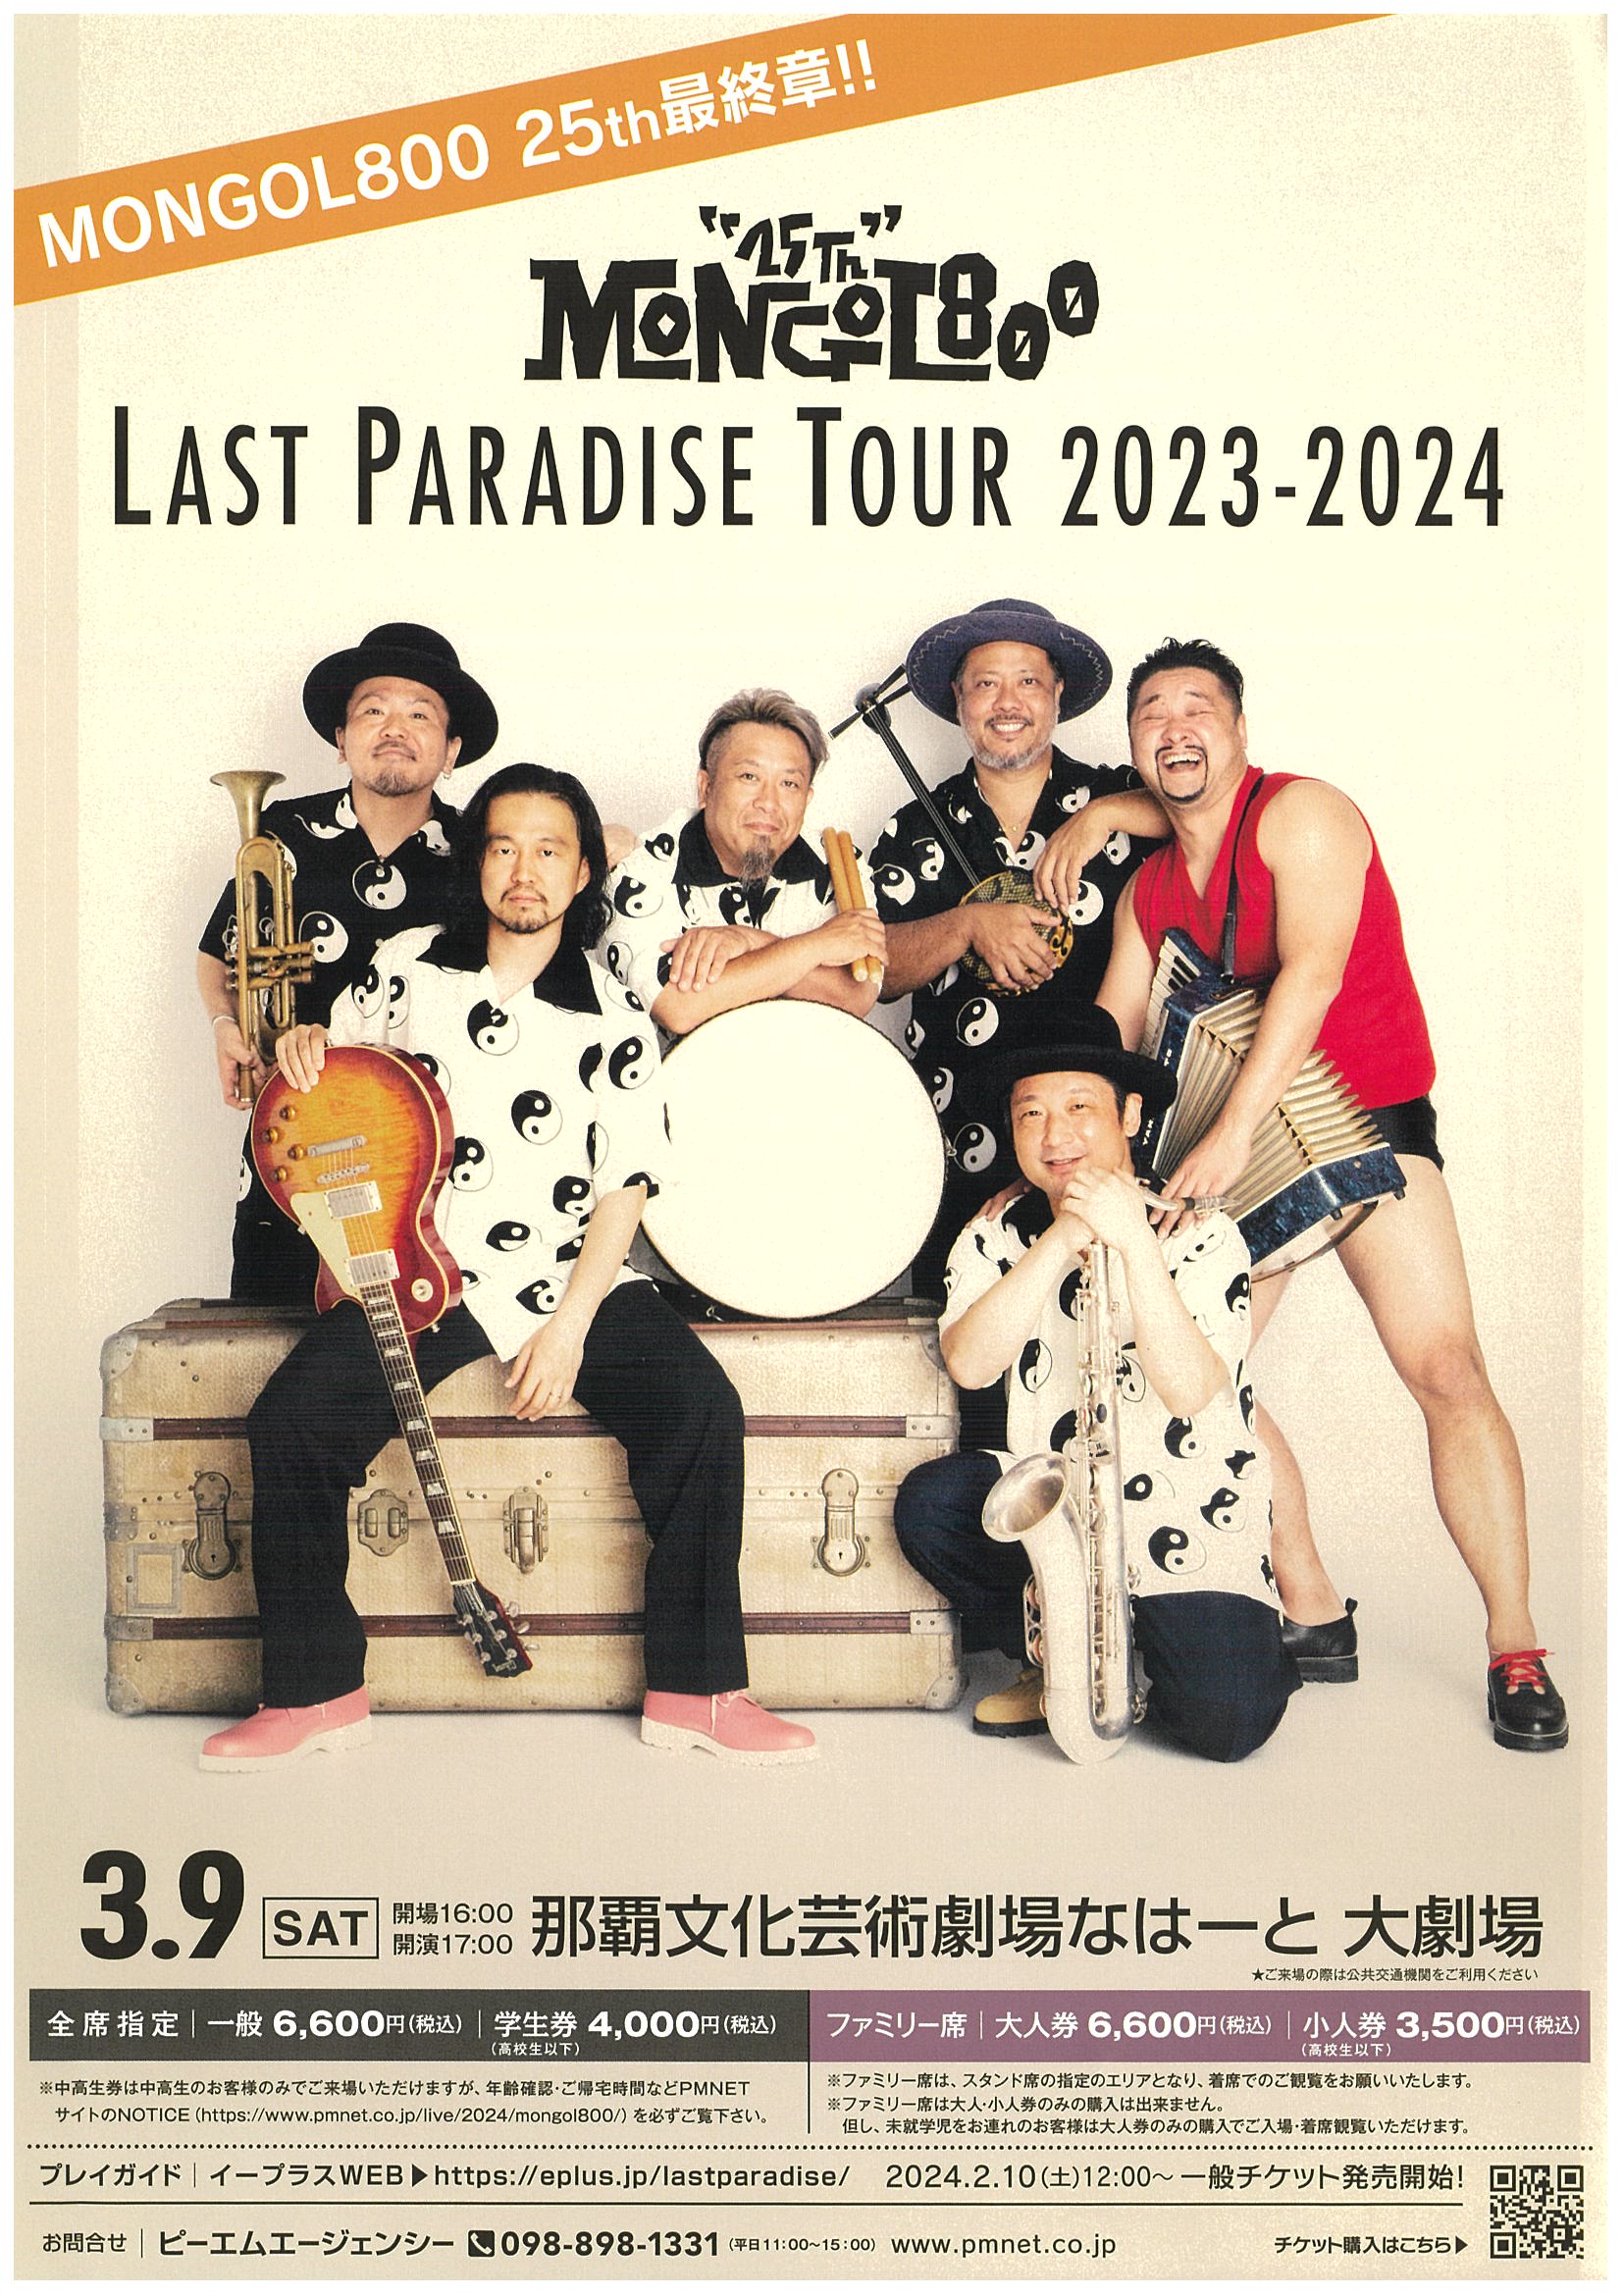 MONGOL800   25th    LAST   PARADISE   TOUR  2023-2024